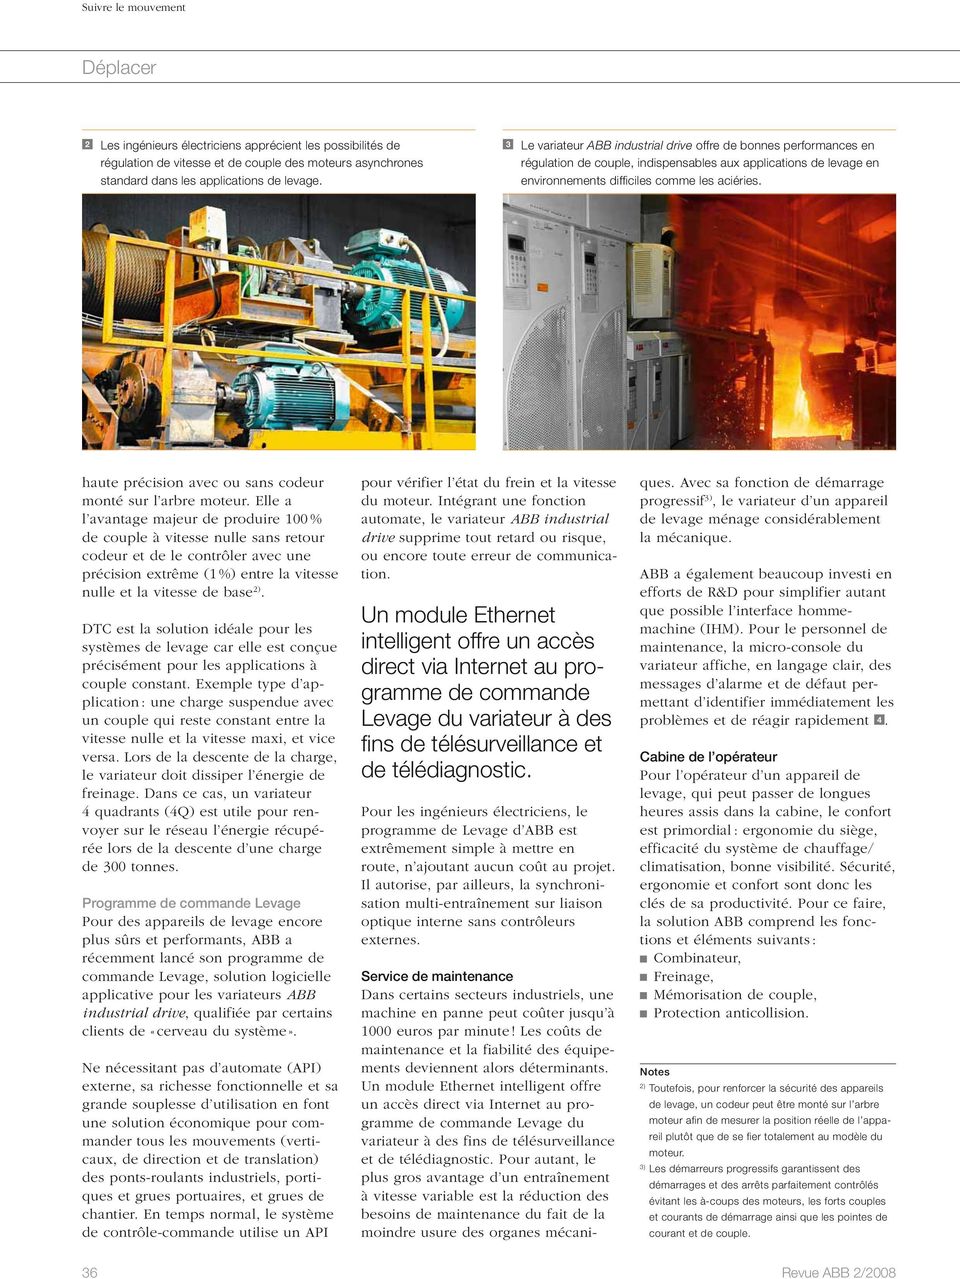 Service de maintenance Dans certains secteurs industriels, une machine en panne peut coûter jusqu à 1000 euros par minute!